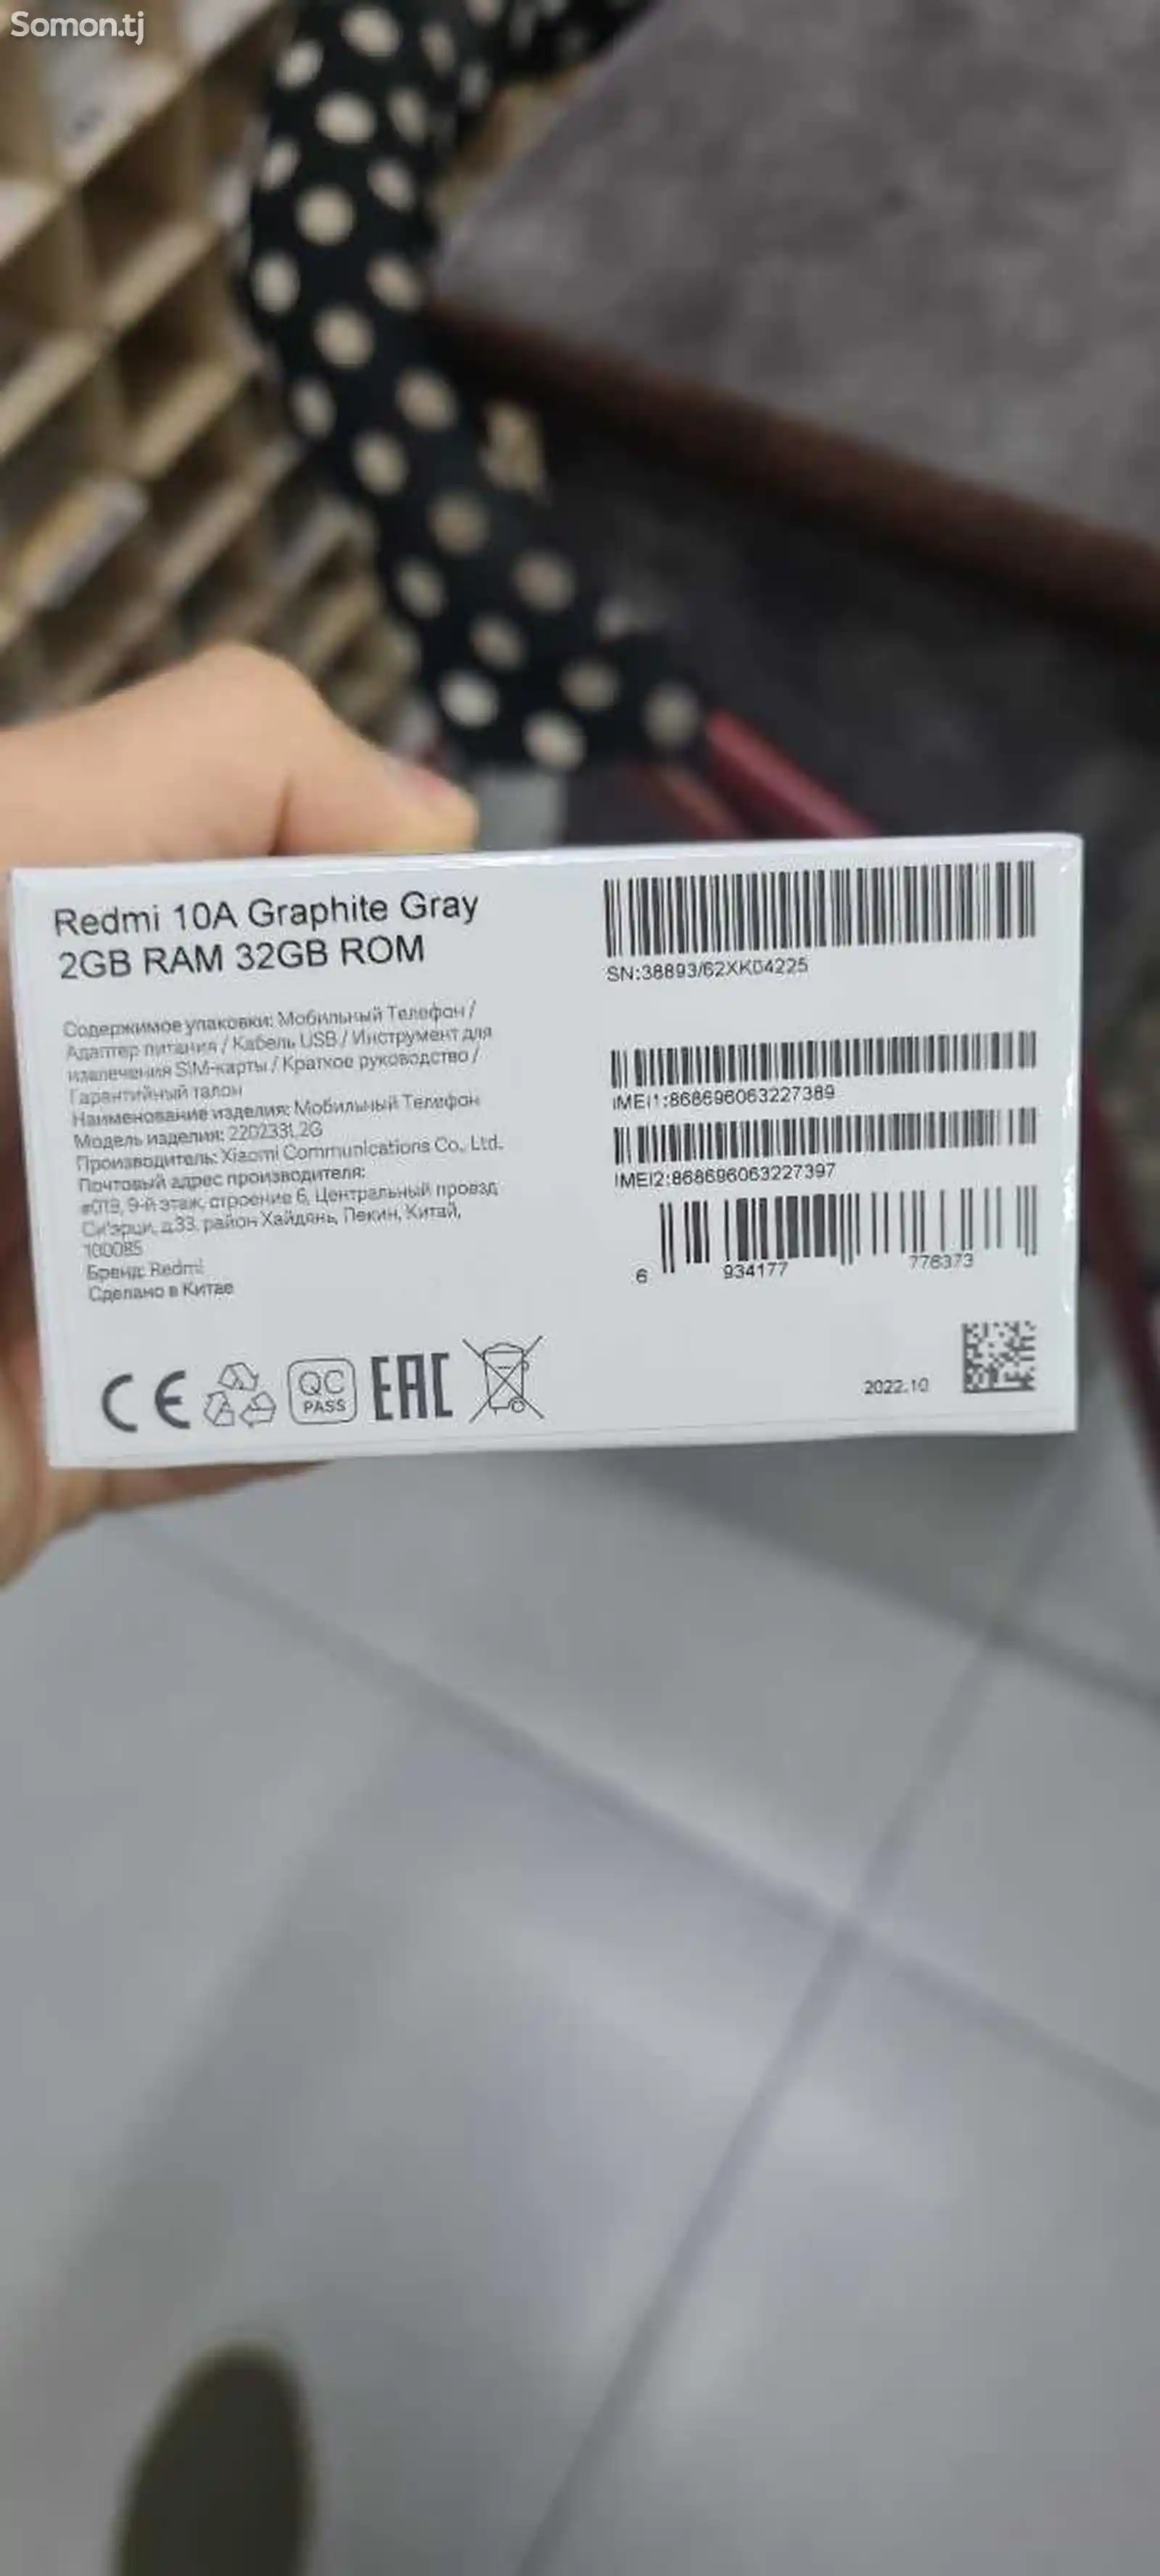 Xiaomi Redmi 10a-2